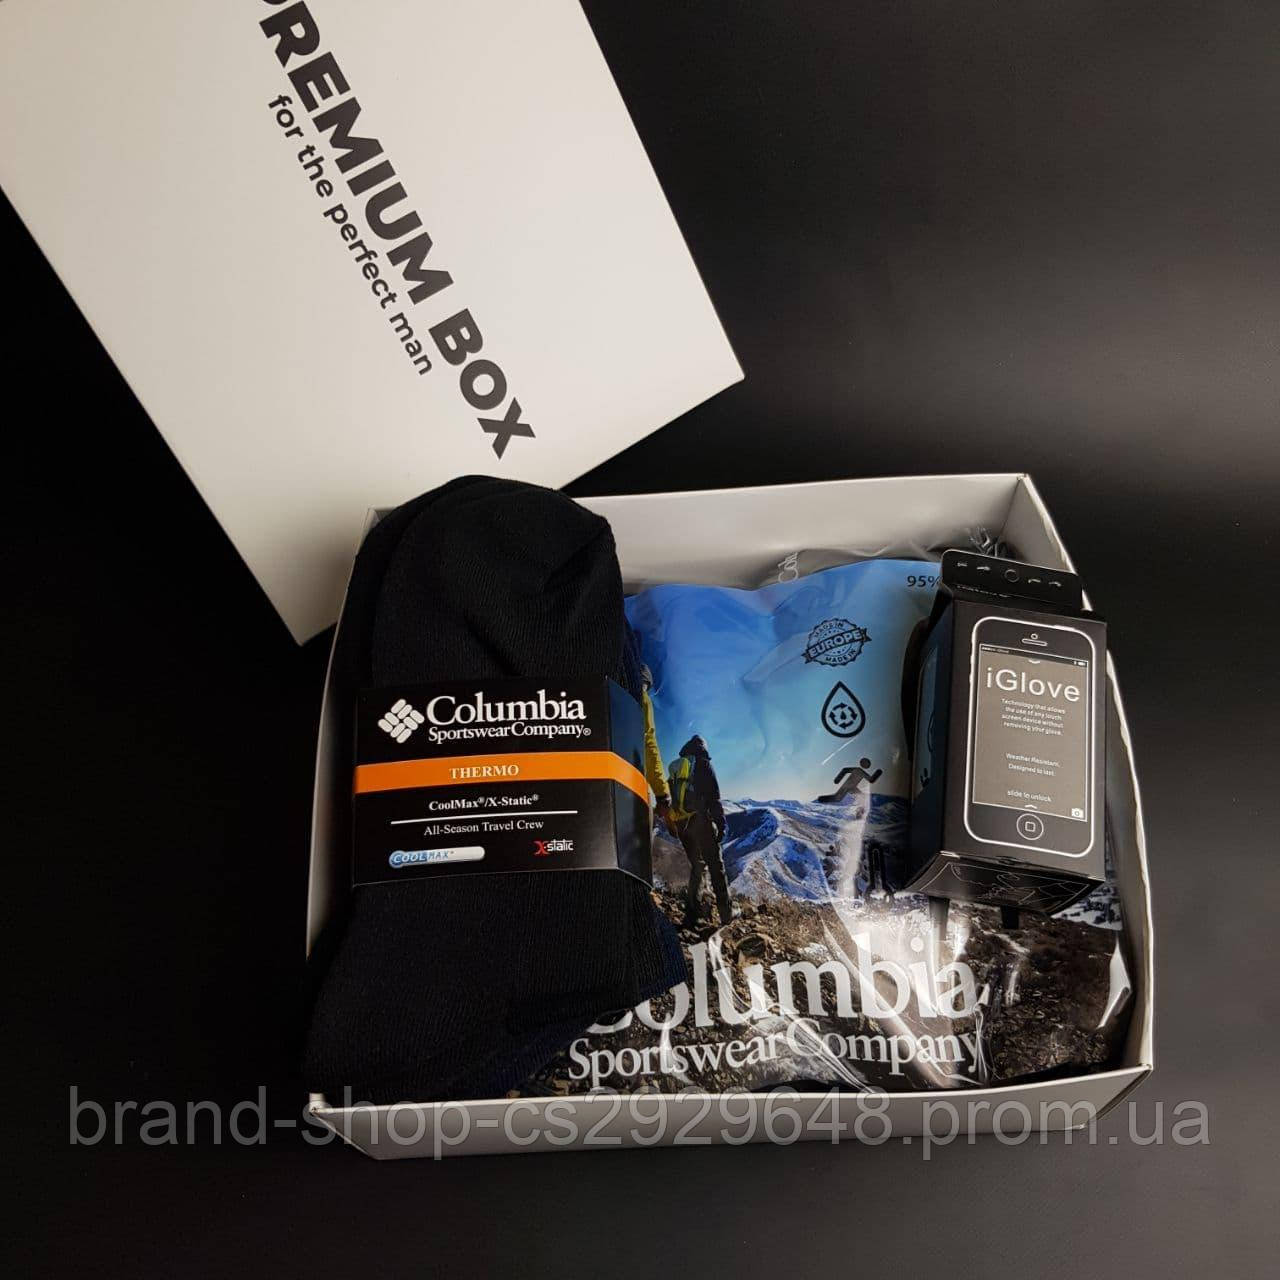 Чоловіча термобілизна Columbia + 4 пари термошкарпеток + сенсорні рукавички iGlove PREMIUM BOX